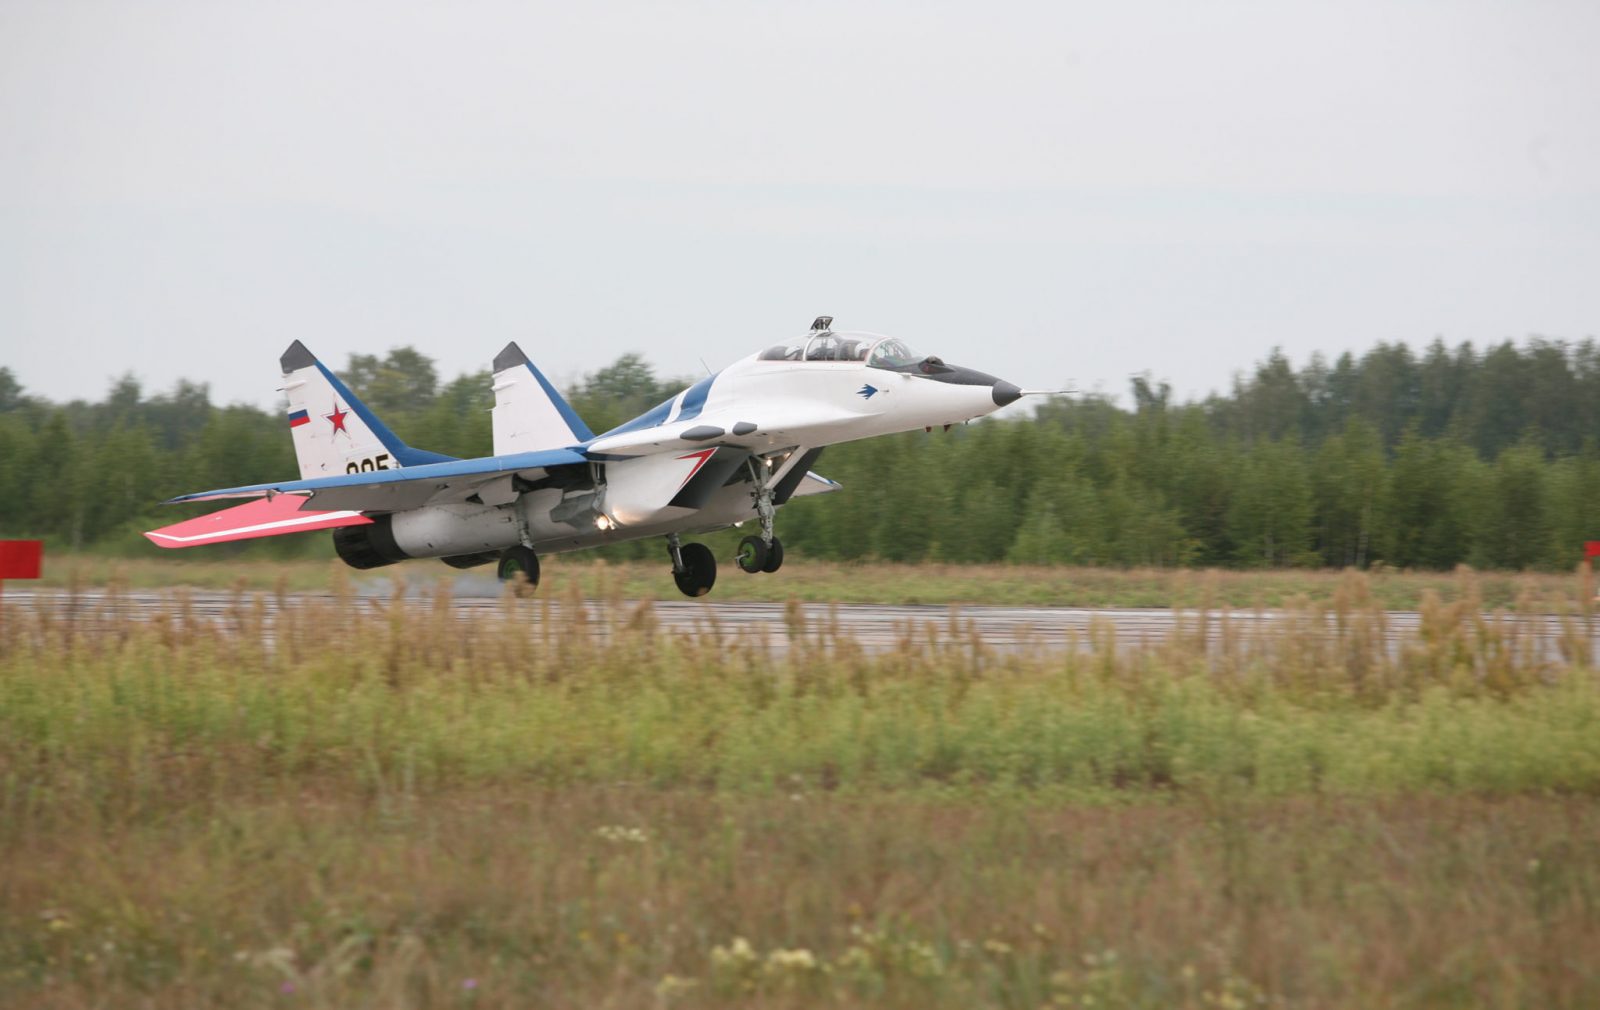 http://www.defenceaviation.com/wp-content/uploads/2014/05/MiG-29-landing.jpg